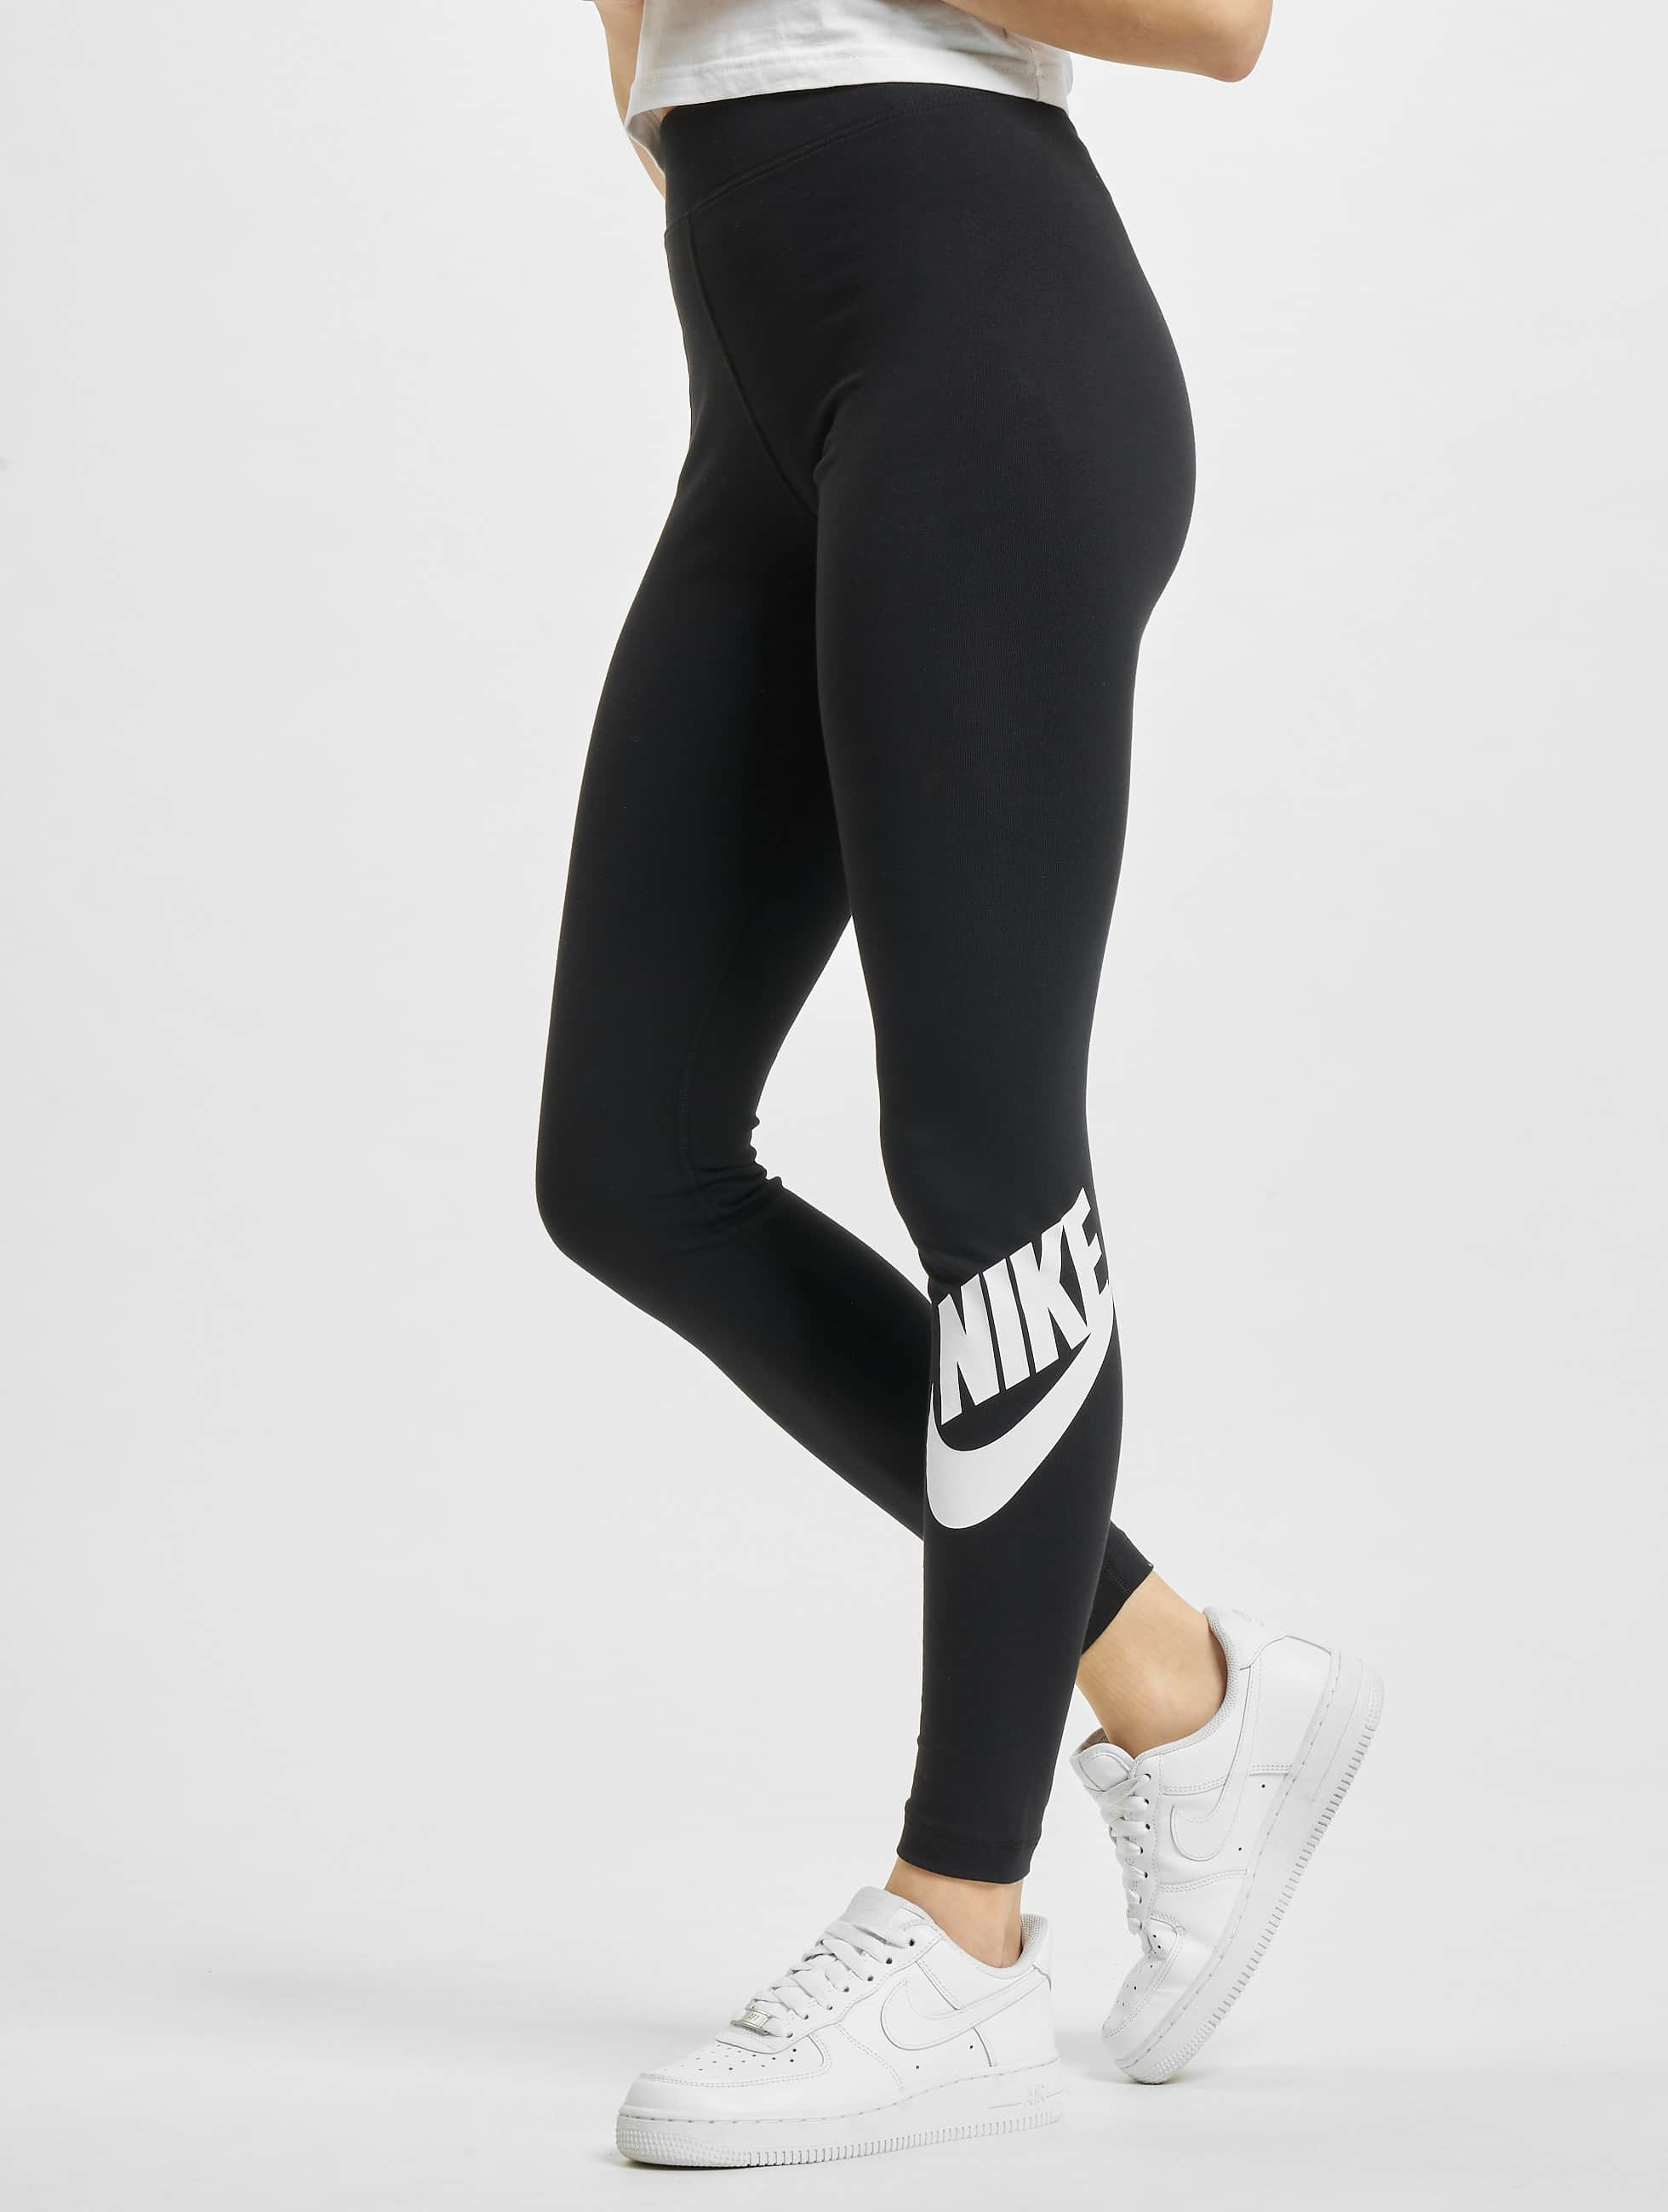 Op te slaan etnisch Armoedig Nike broek / Legging Essential GX HR in zwart 806725